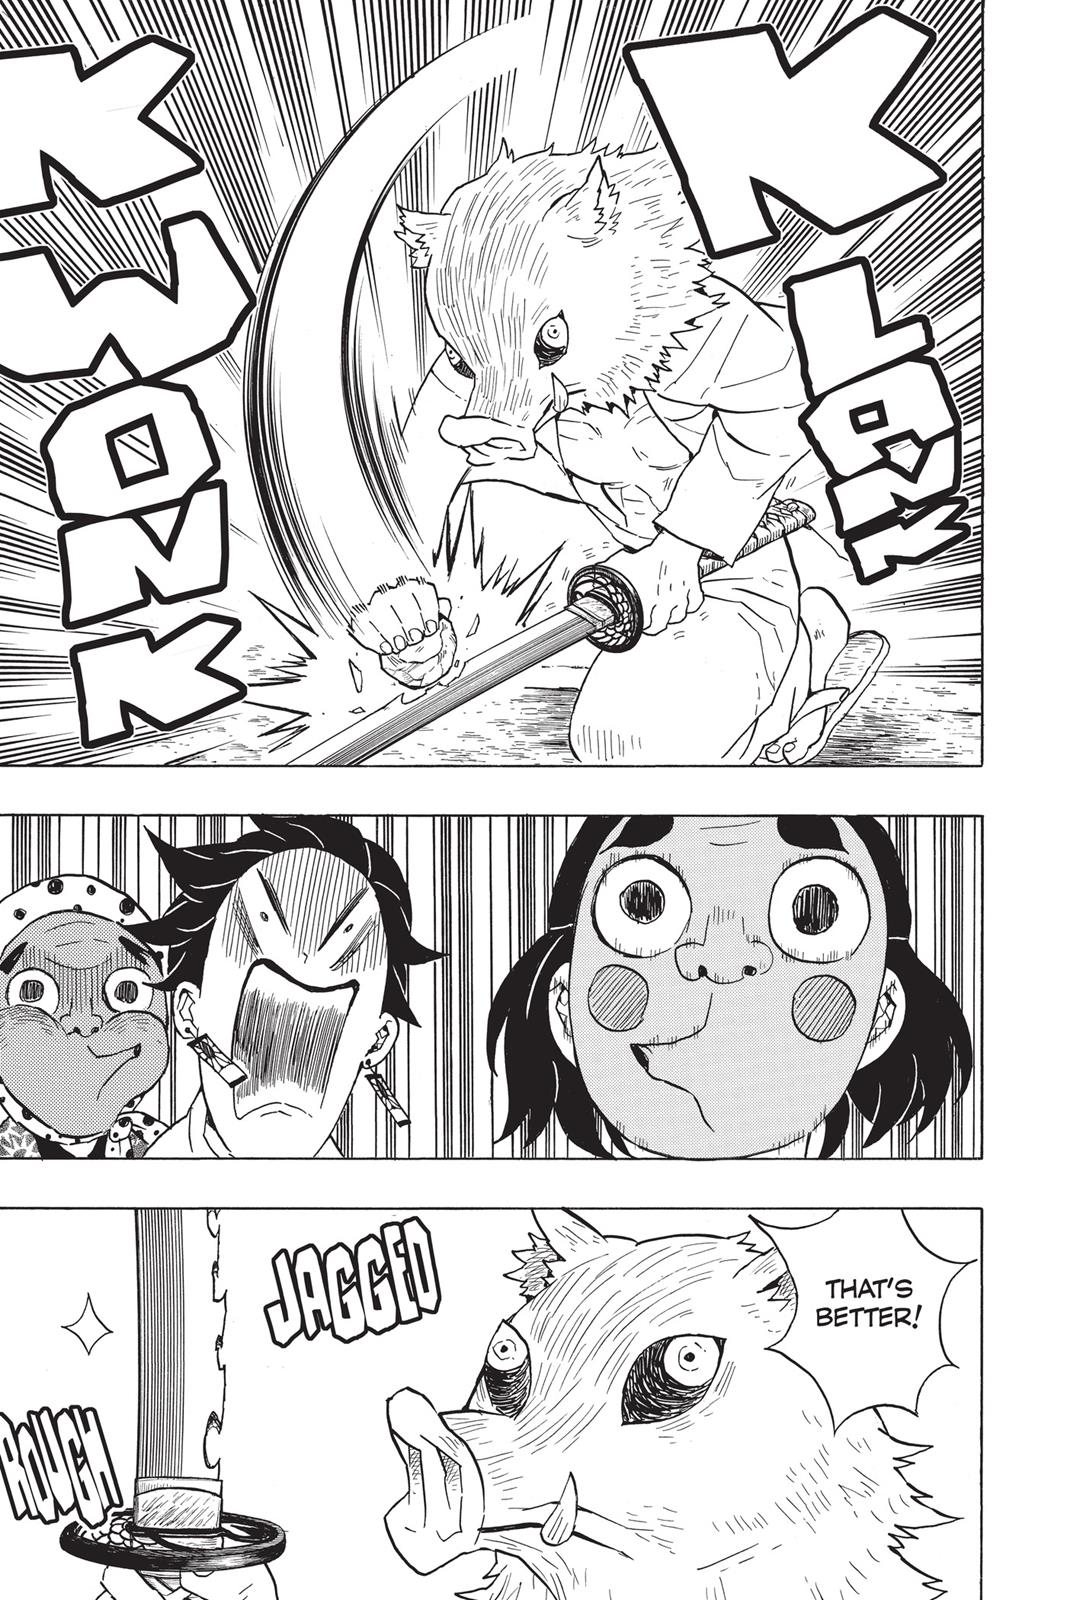 Demon Slayer Manga Manga Chapter - 51 - image 8